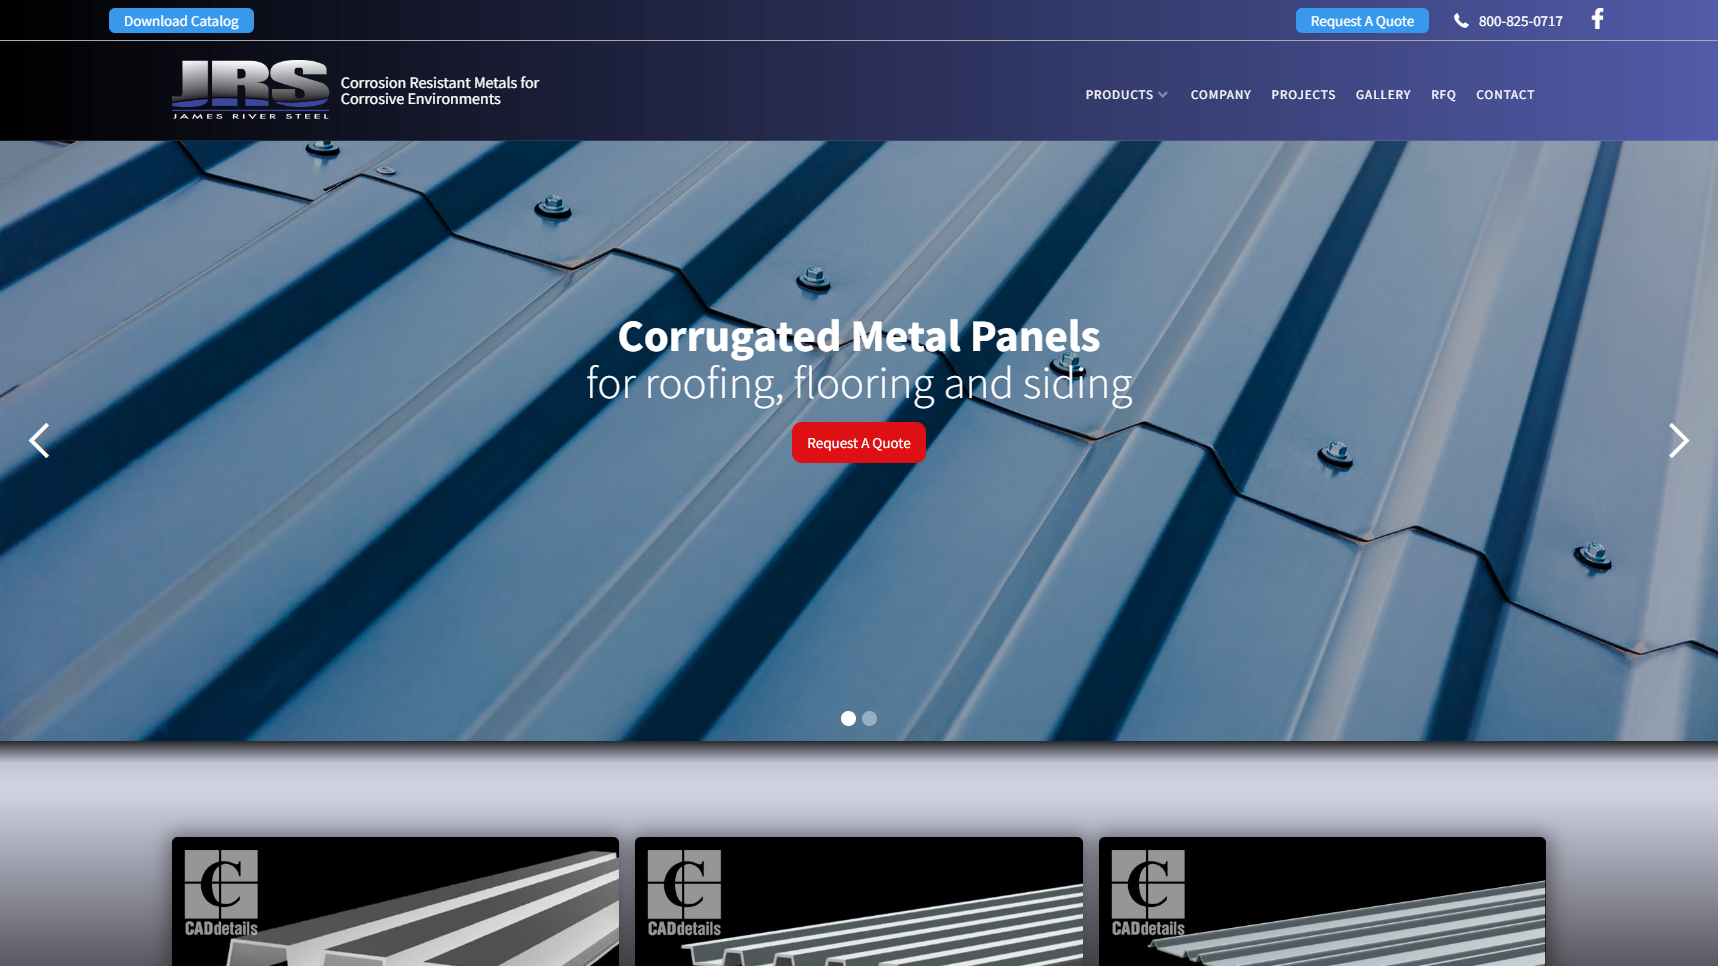 James River Steel, Inc. - Corrugated Metal Sheet Manufacturer